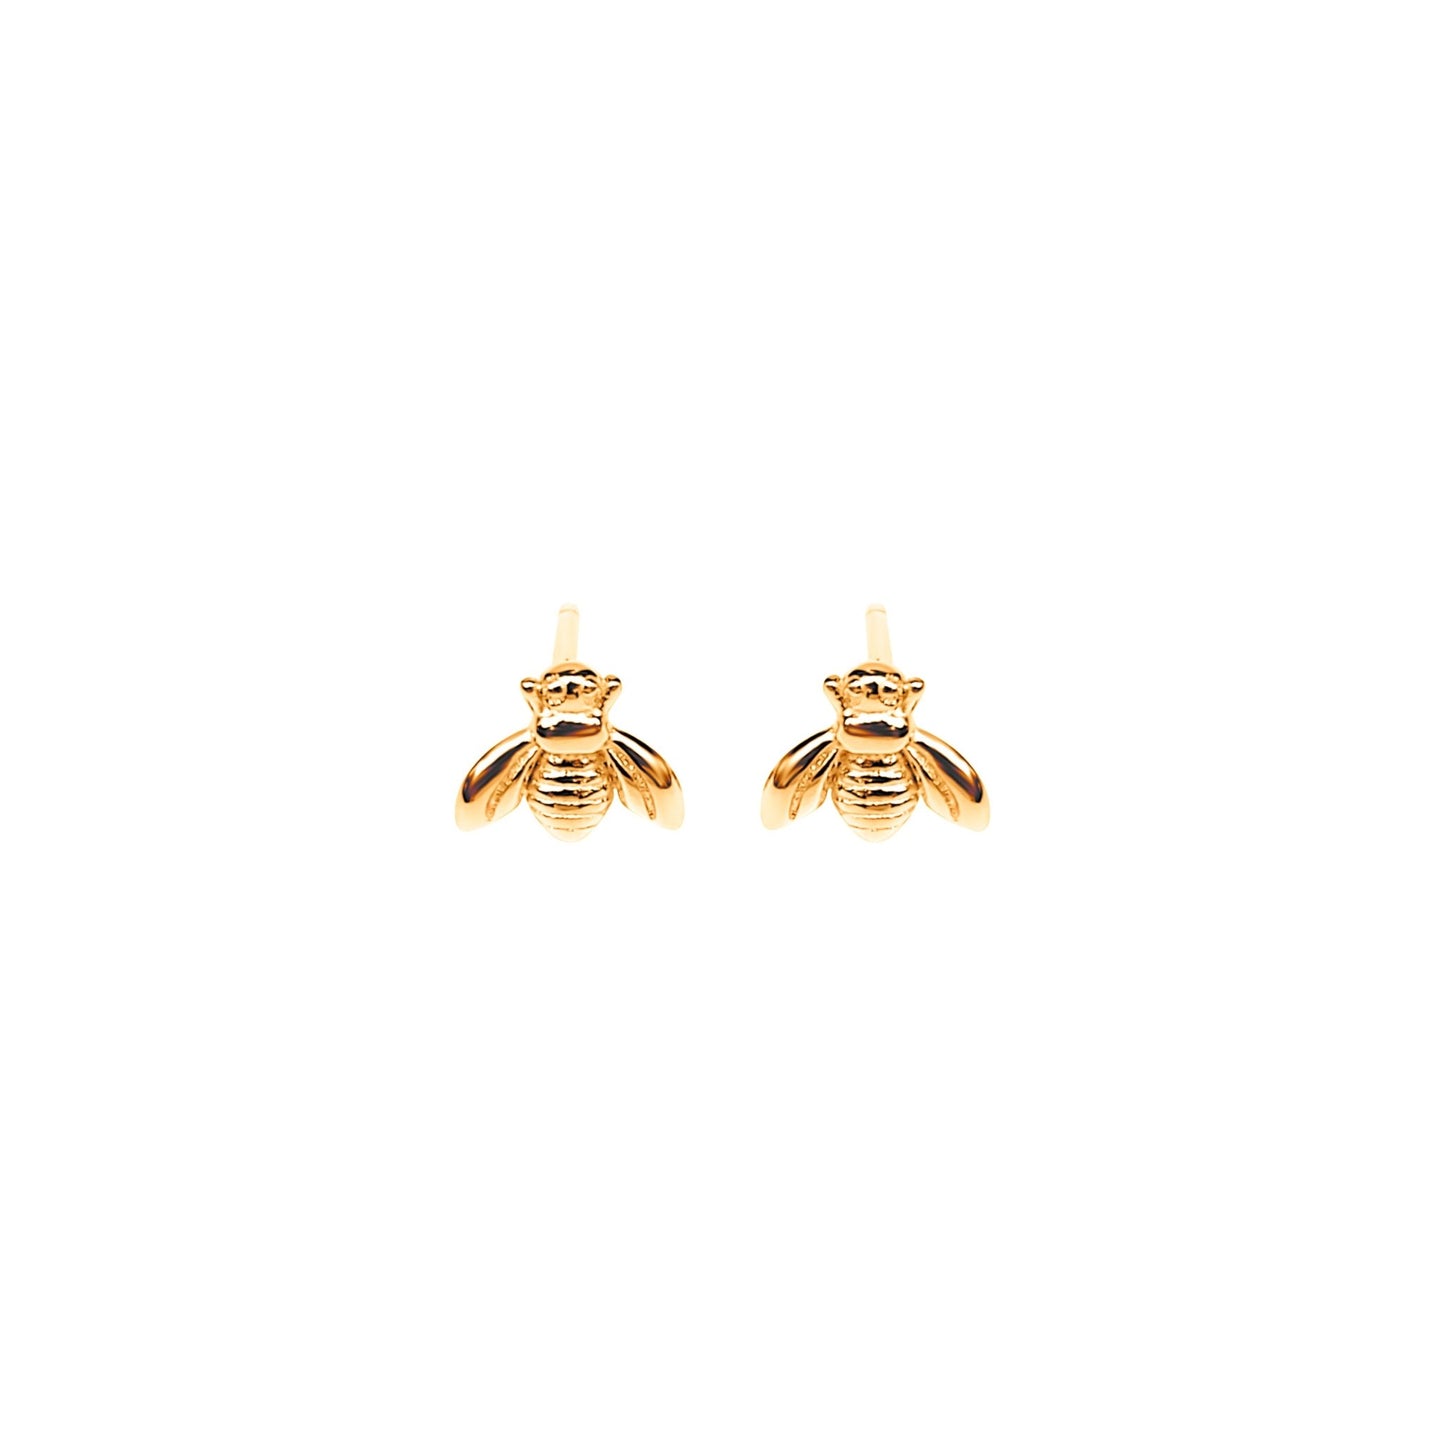 gold plated Erlea Bee sterling silver stud earrings. Cute little bees on earring posts.